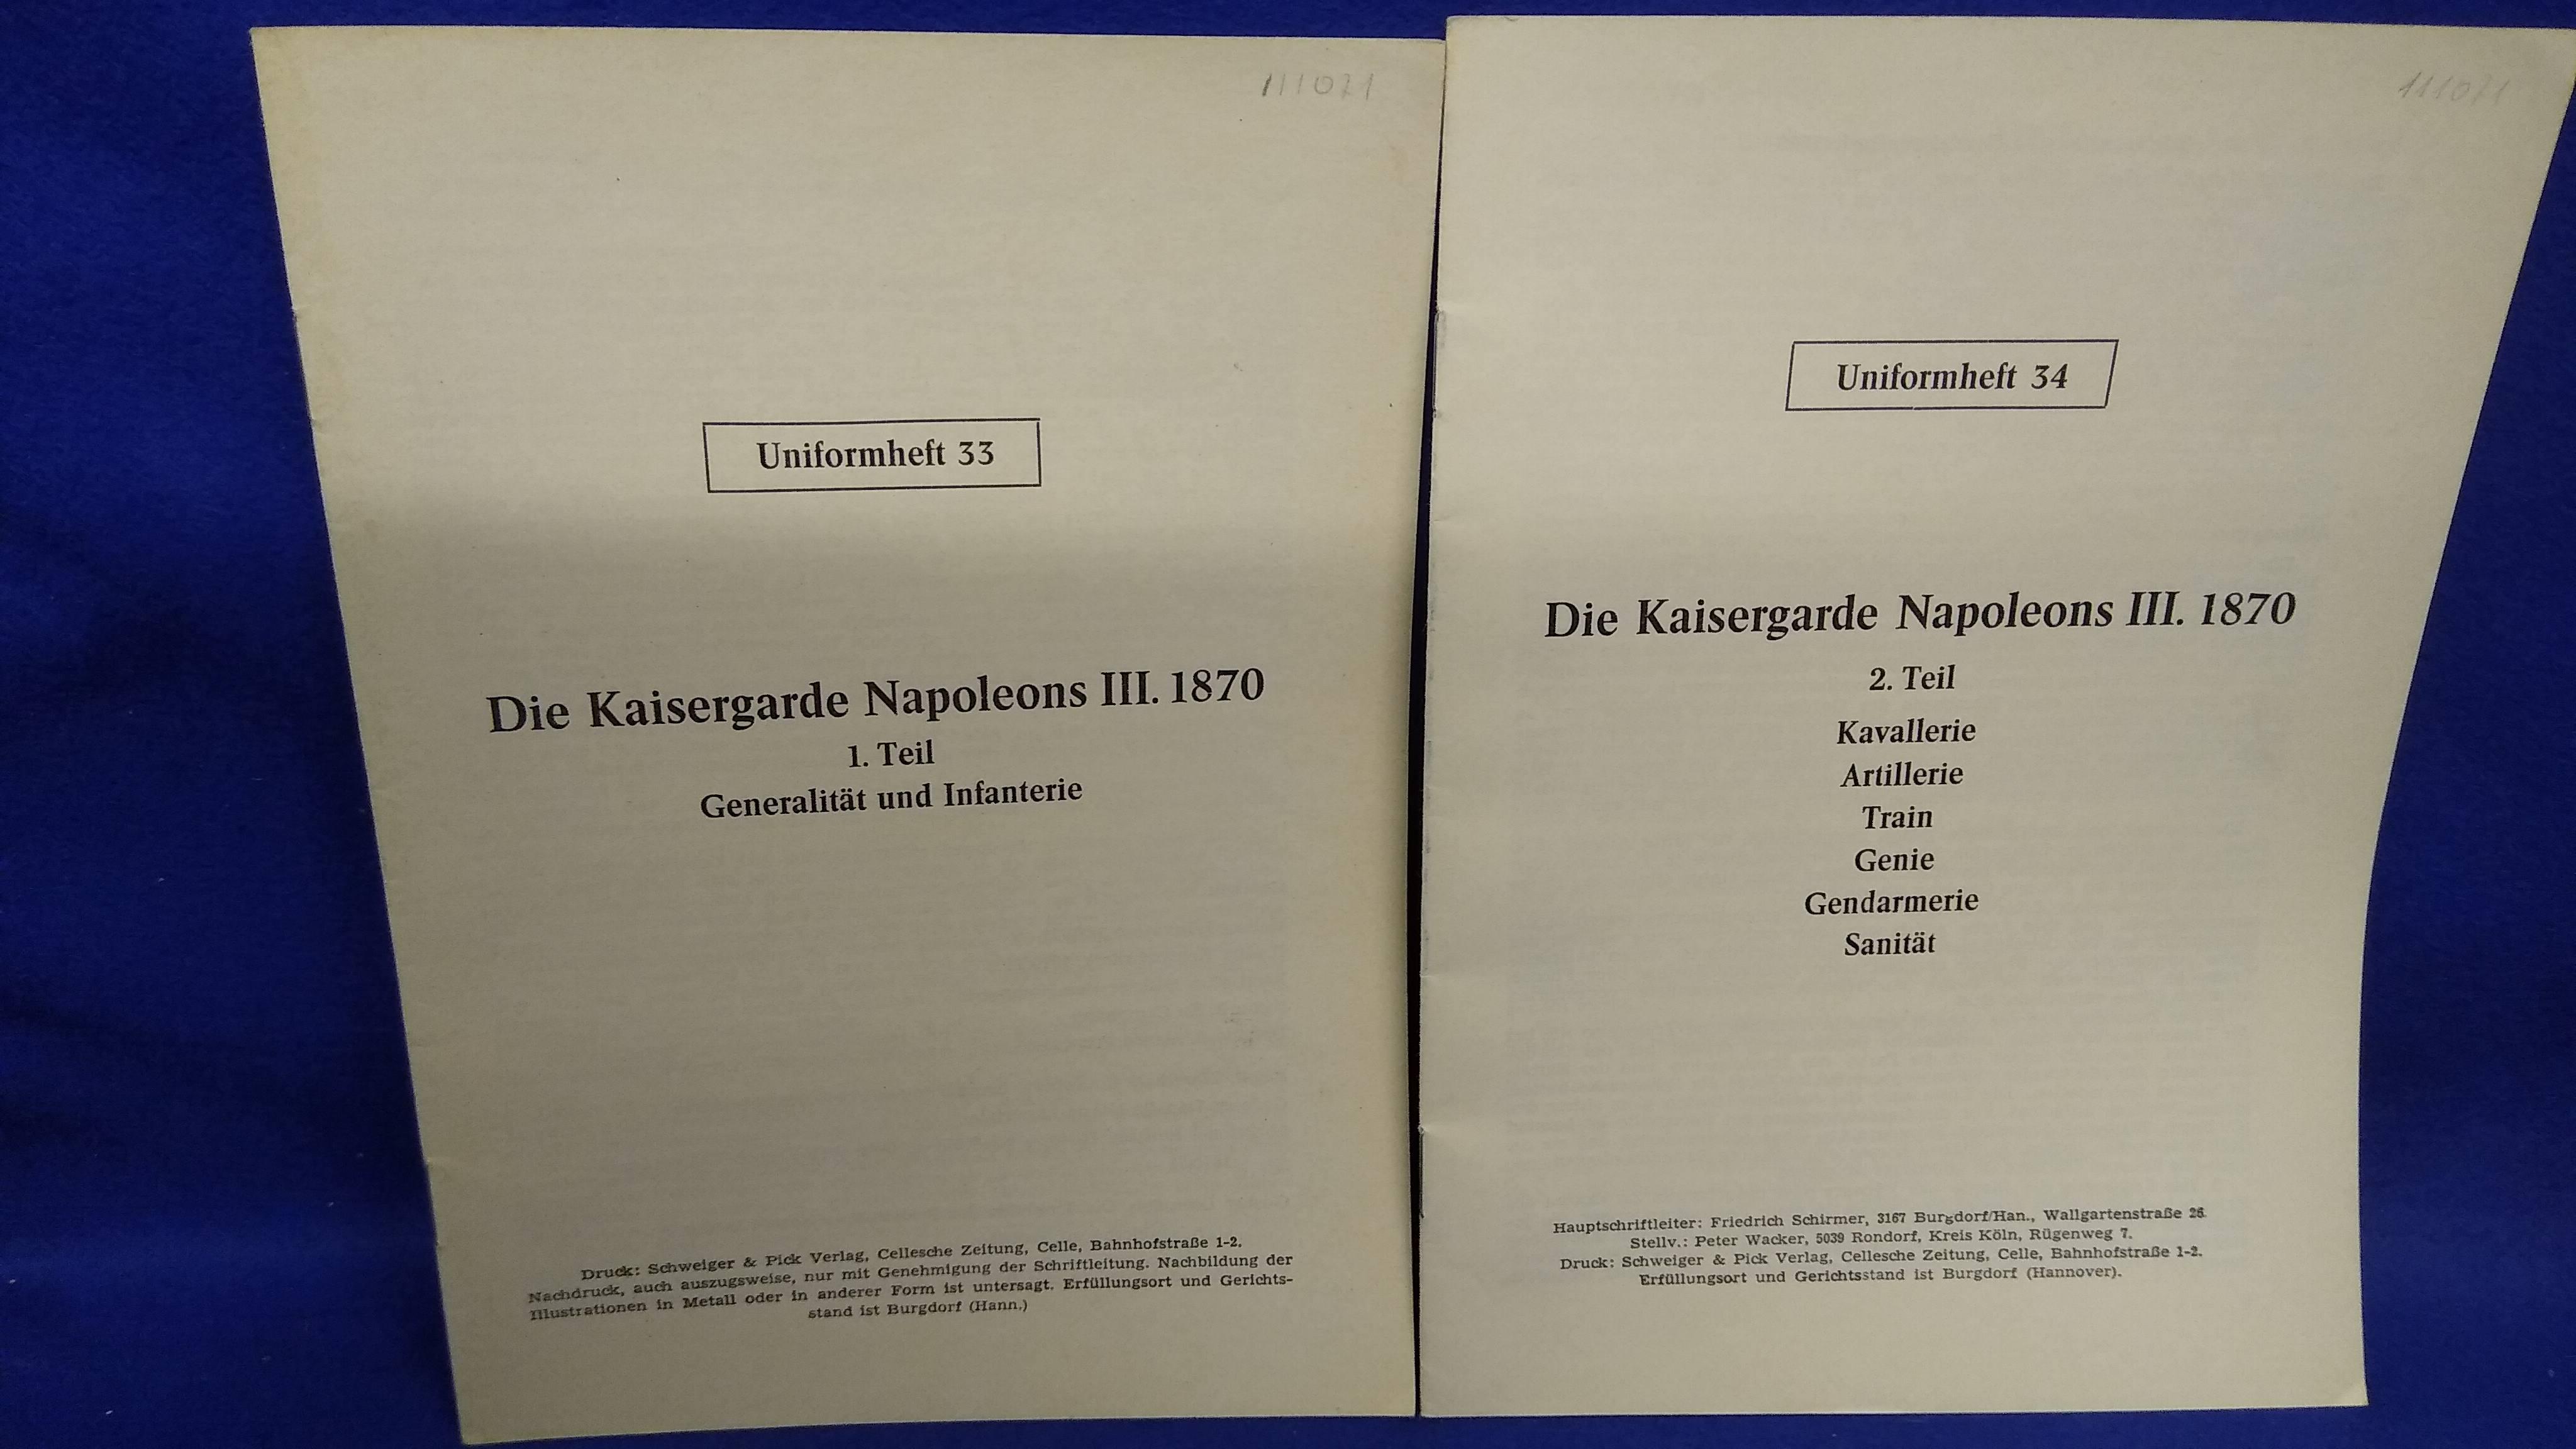 Die Kaisergarde Napoleons III. 1870. Teil 1+2. Aus der Reihe: Die Zinnfigur - Uniformheft 33+34 -. Selten.